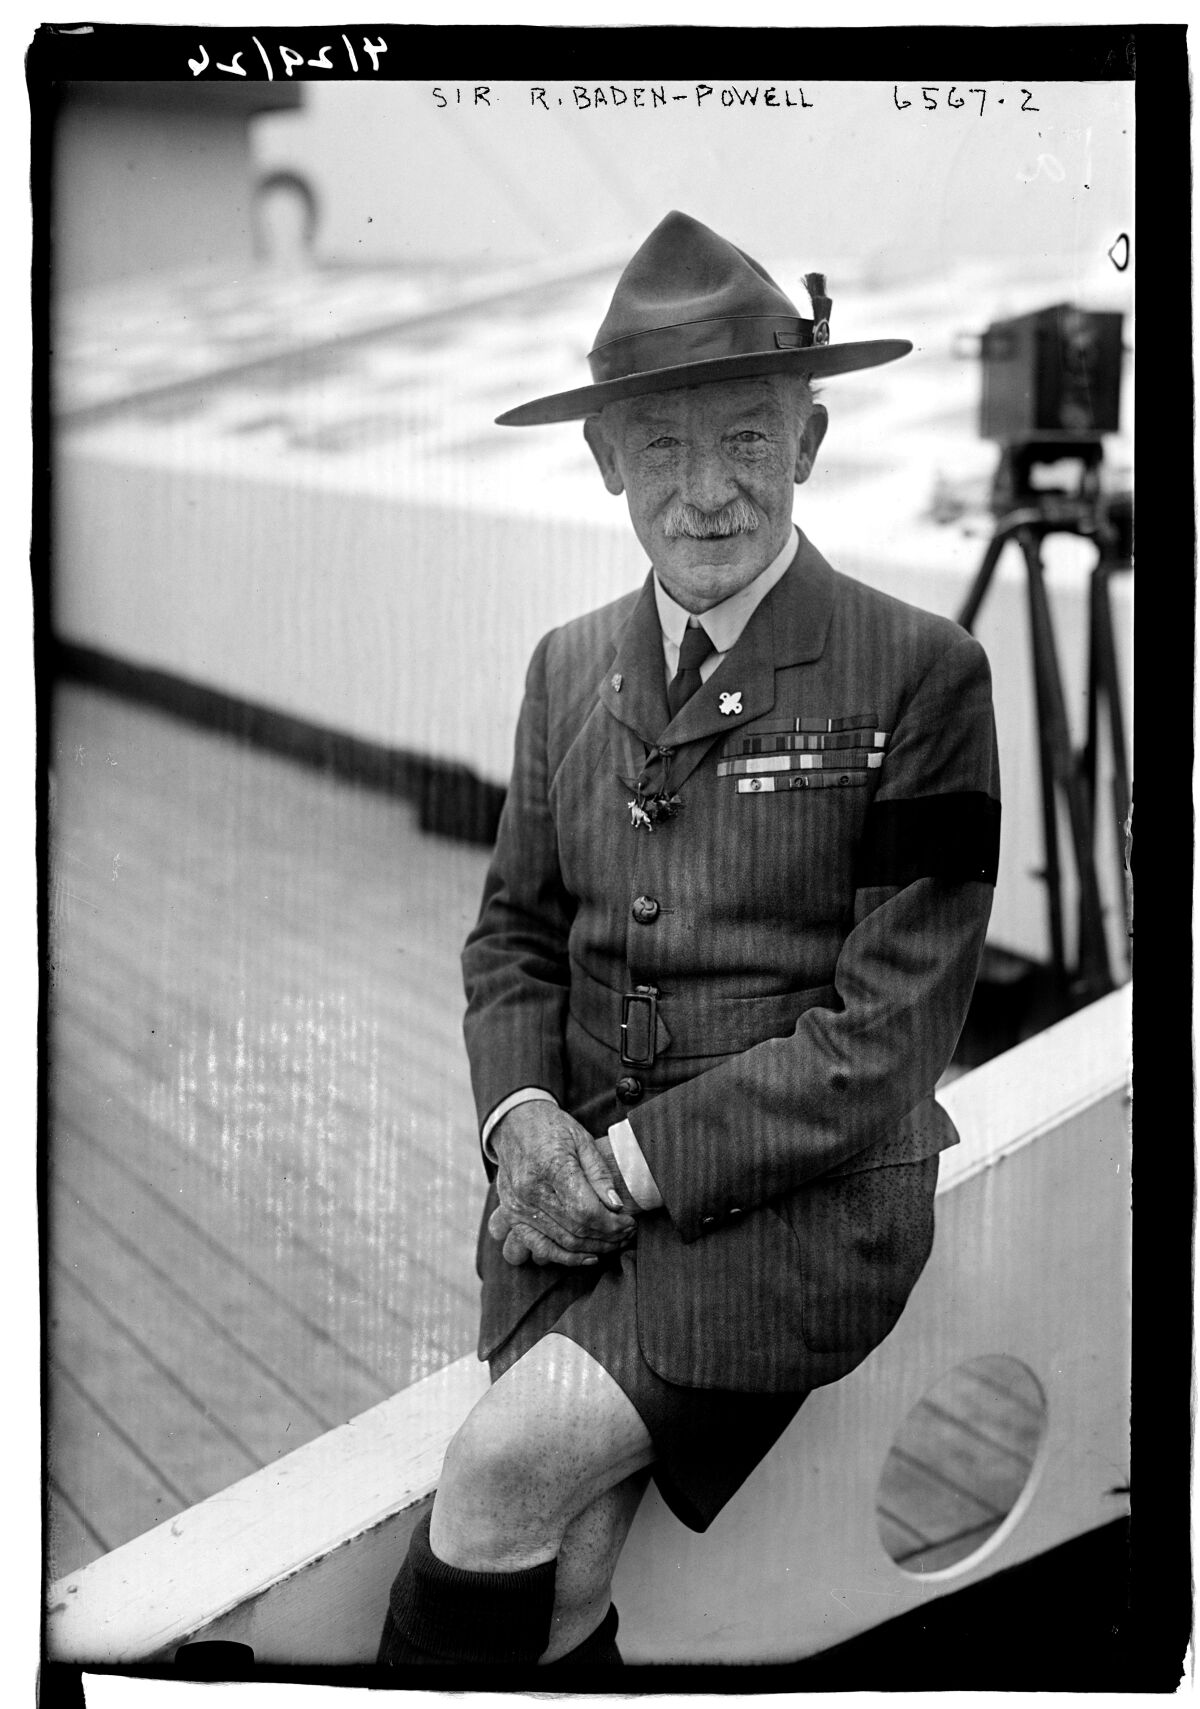 Robert Baden-Powell, circa 1900